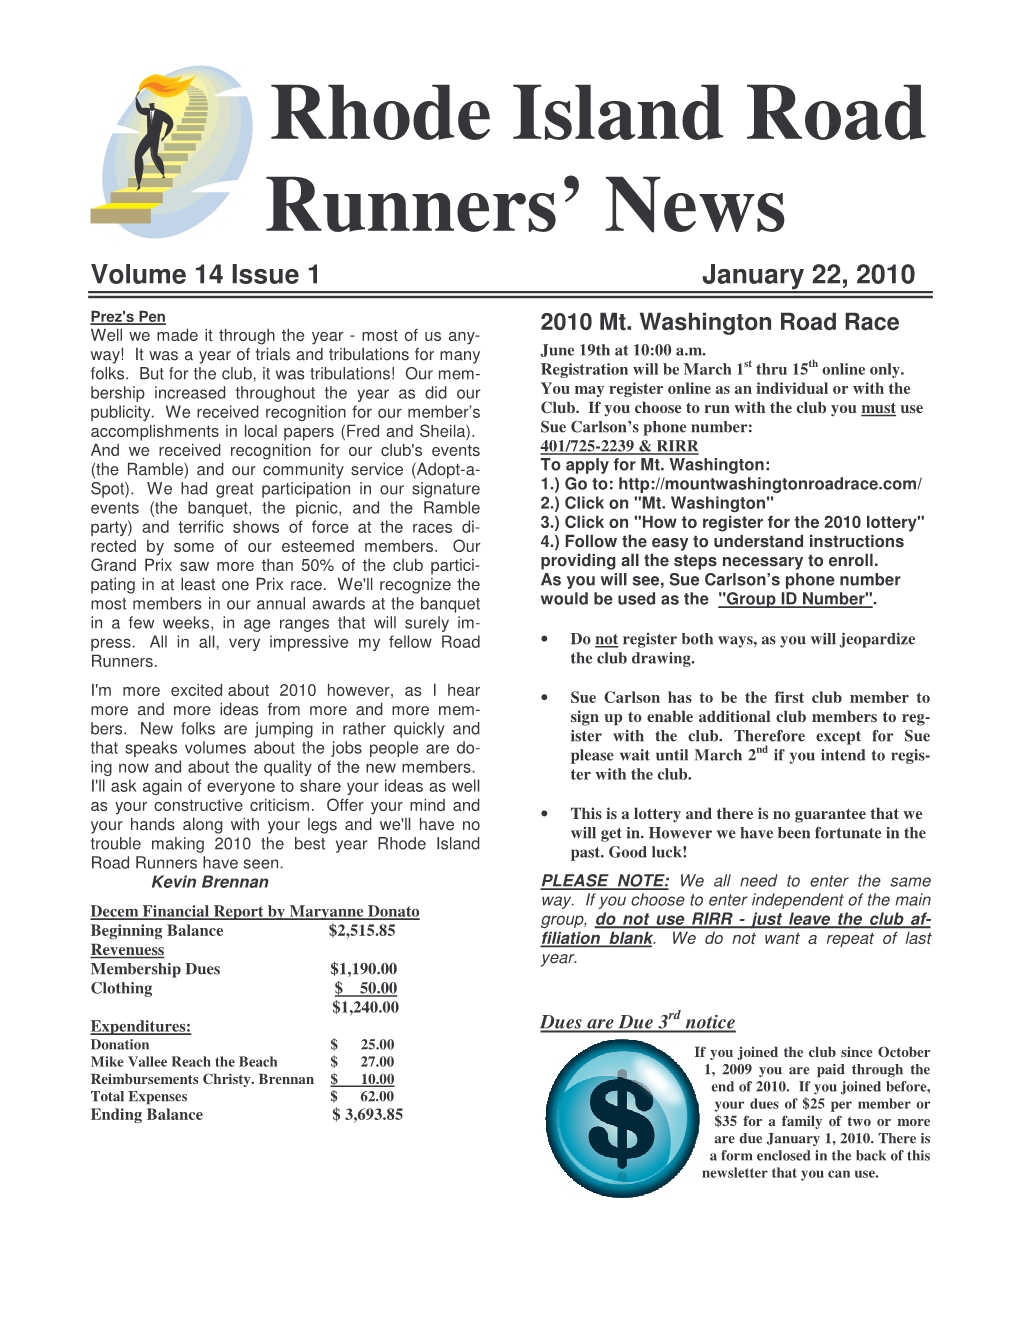 Rhode Island Road Runners' News